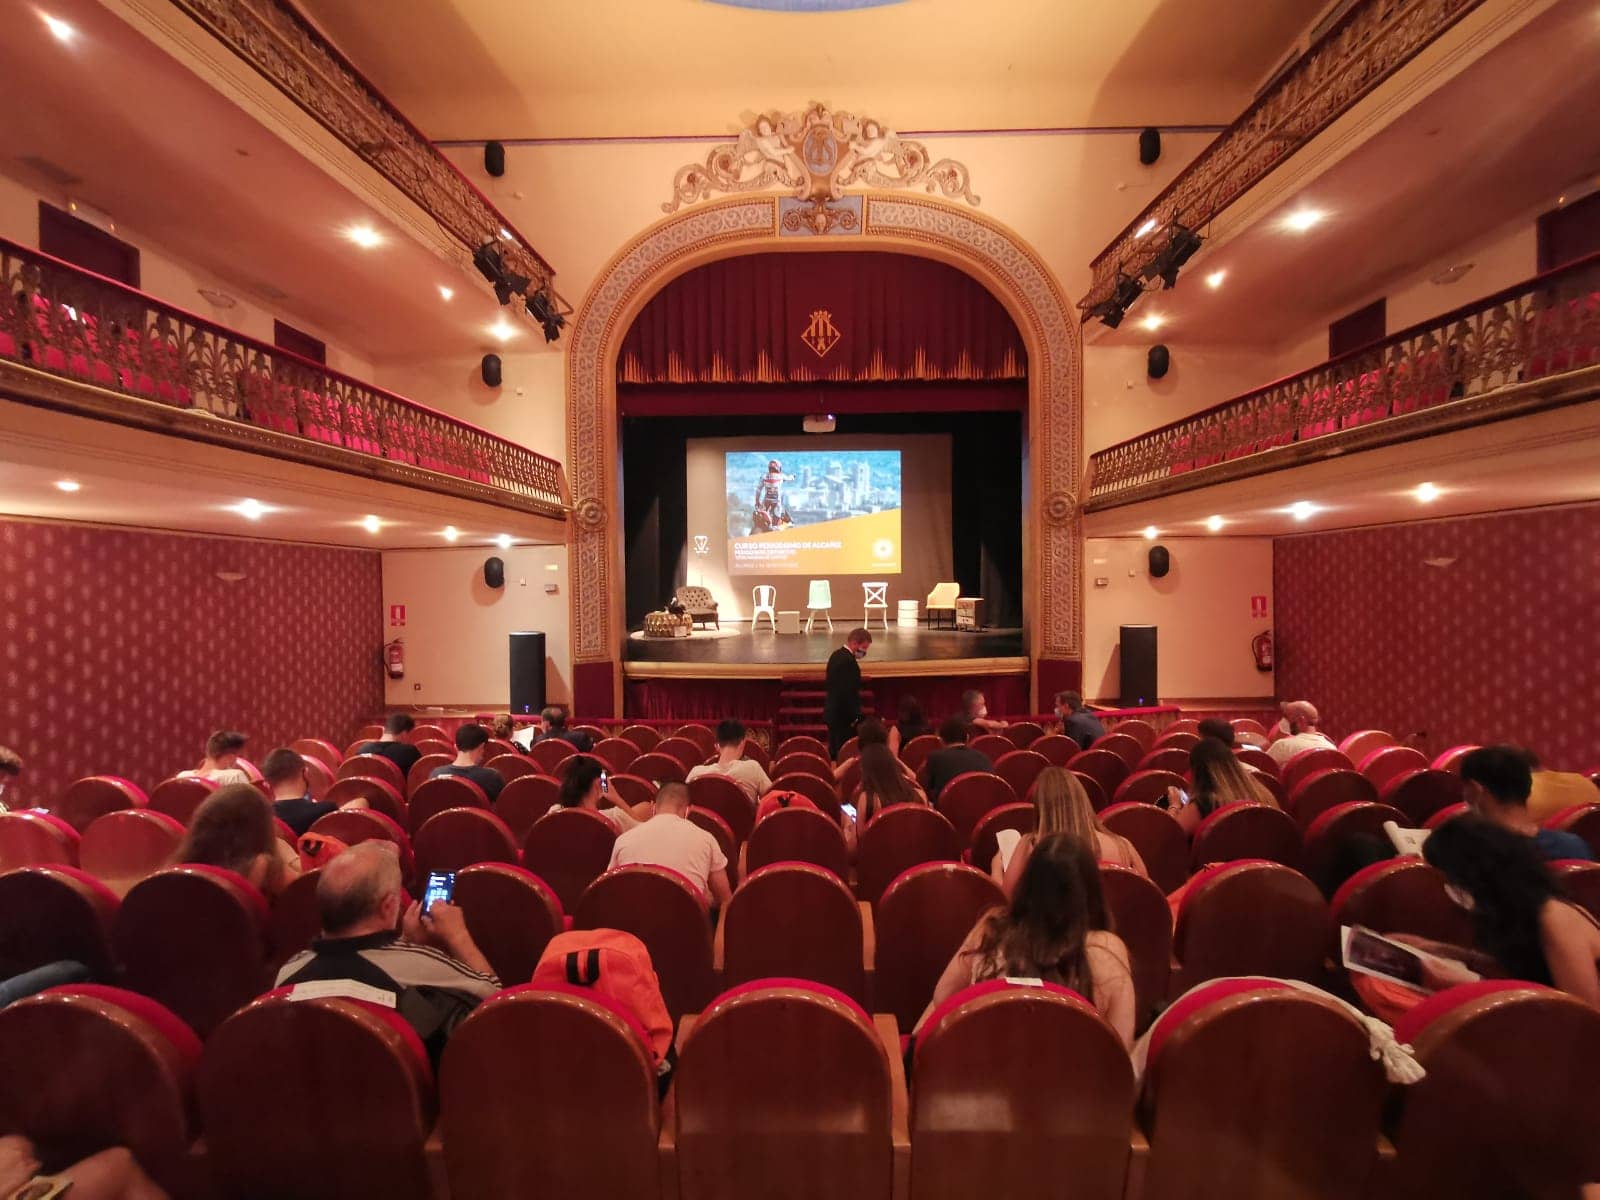 Teatro Municipal de Alcañiz